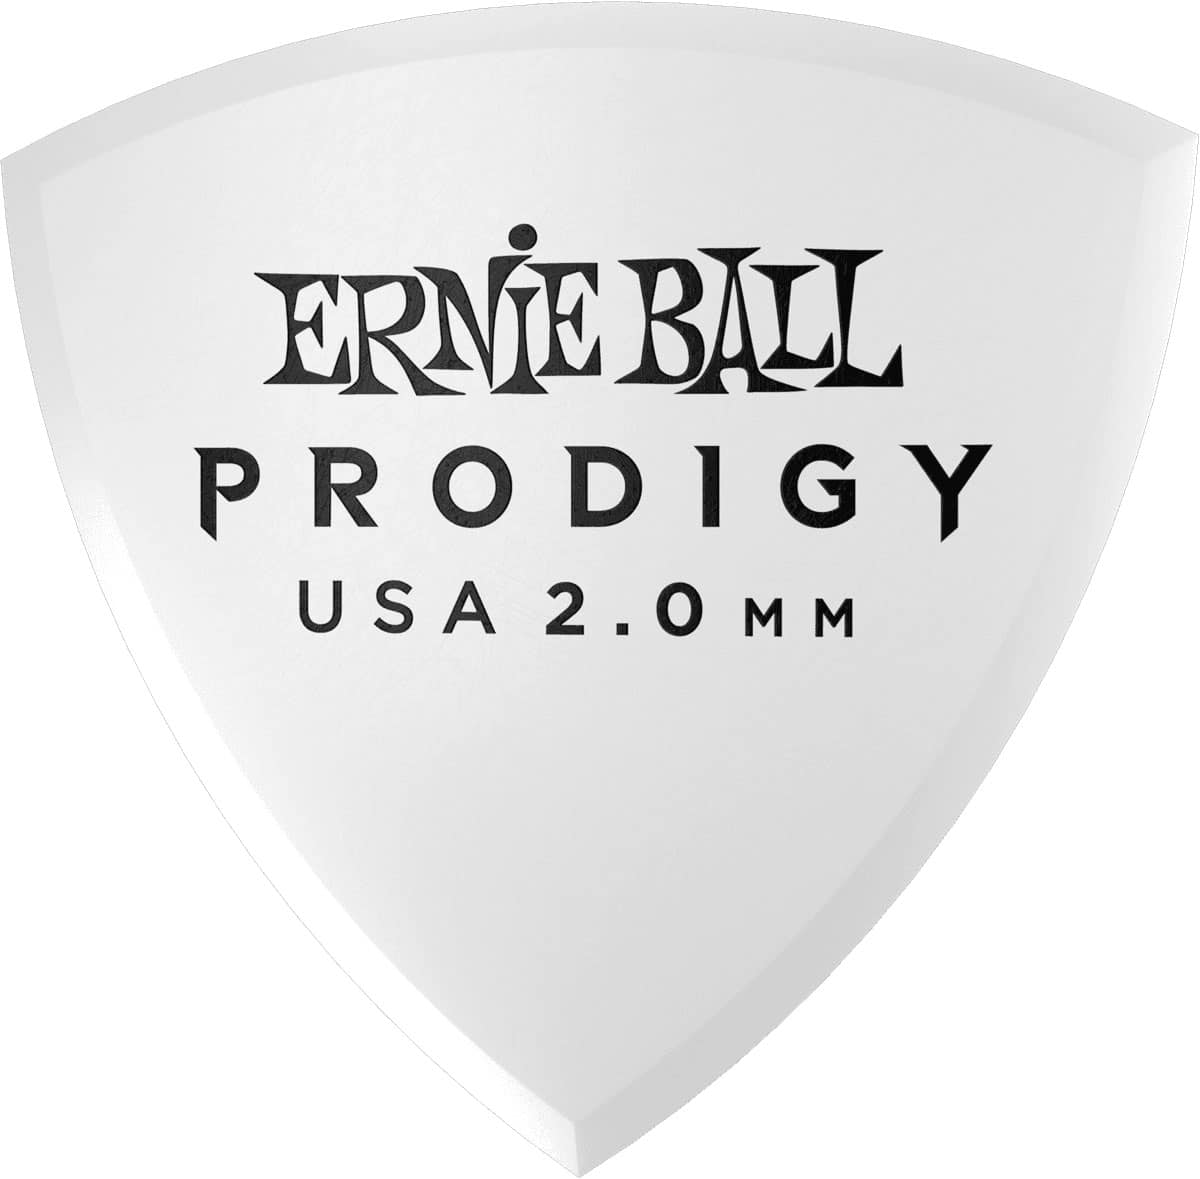 ERNIE BALL MDIATORS PRODIGY BAG OF 6 WHITE SHIELD 2MM